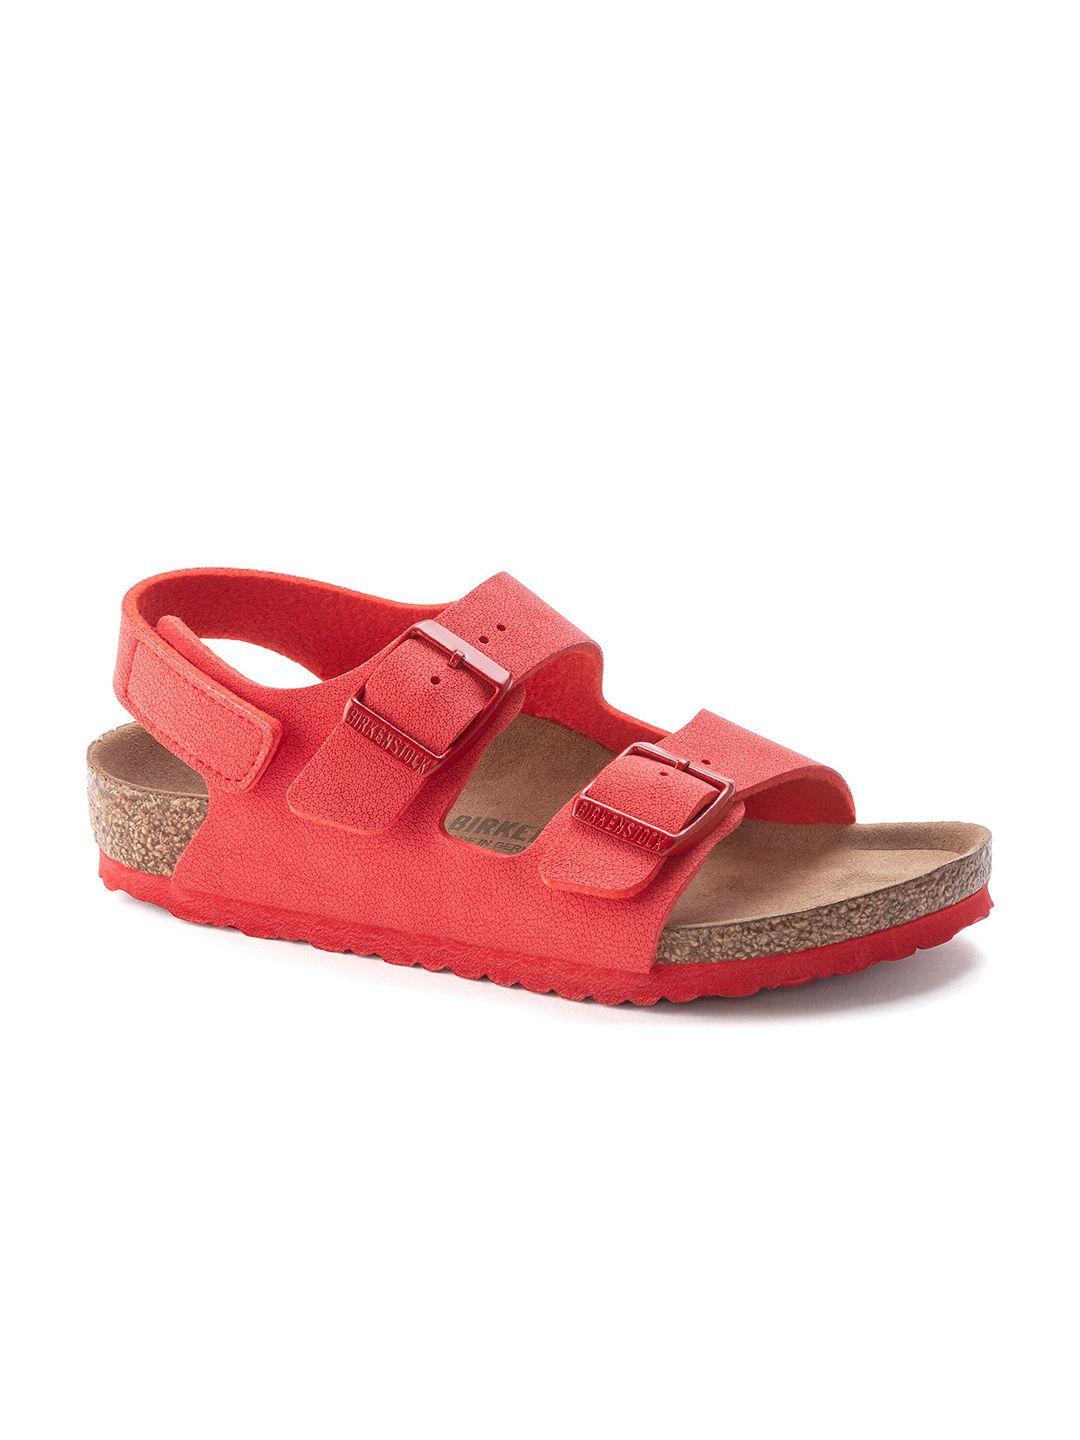 birkenstock-boys-red-milano-narrow-width-comfort-sandals